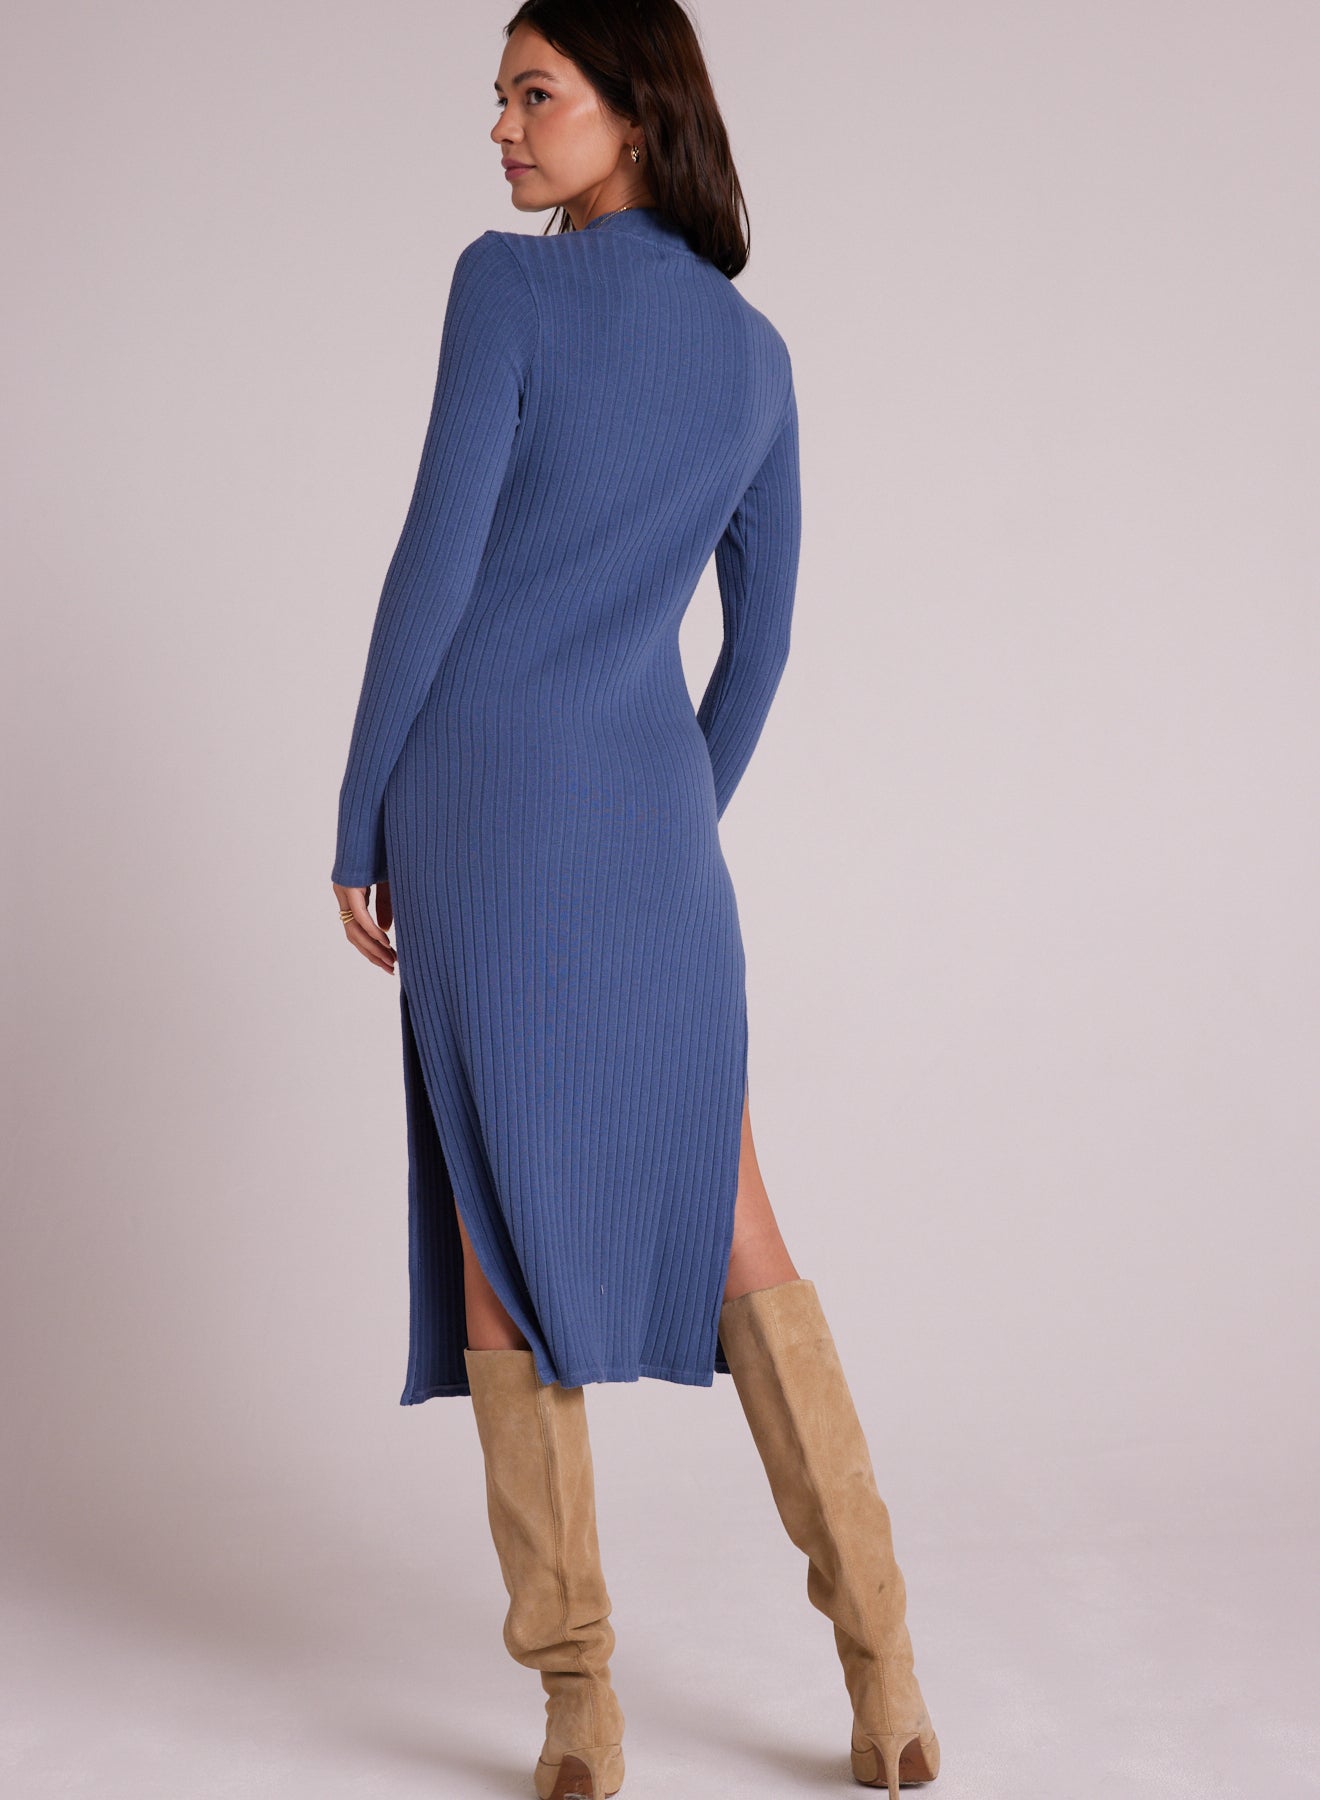 Bella DahlMock Neck Midi Knit Dress - Blue SteelDresses